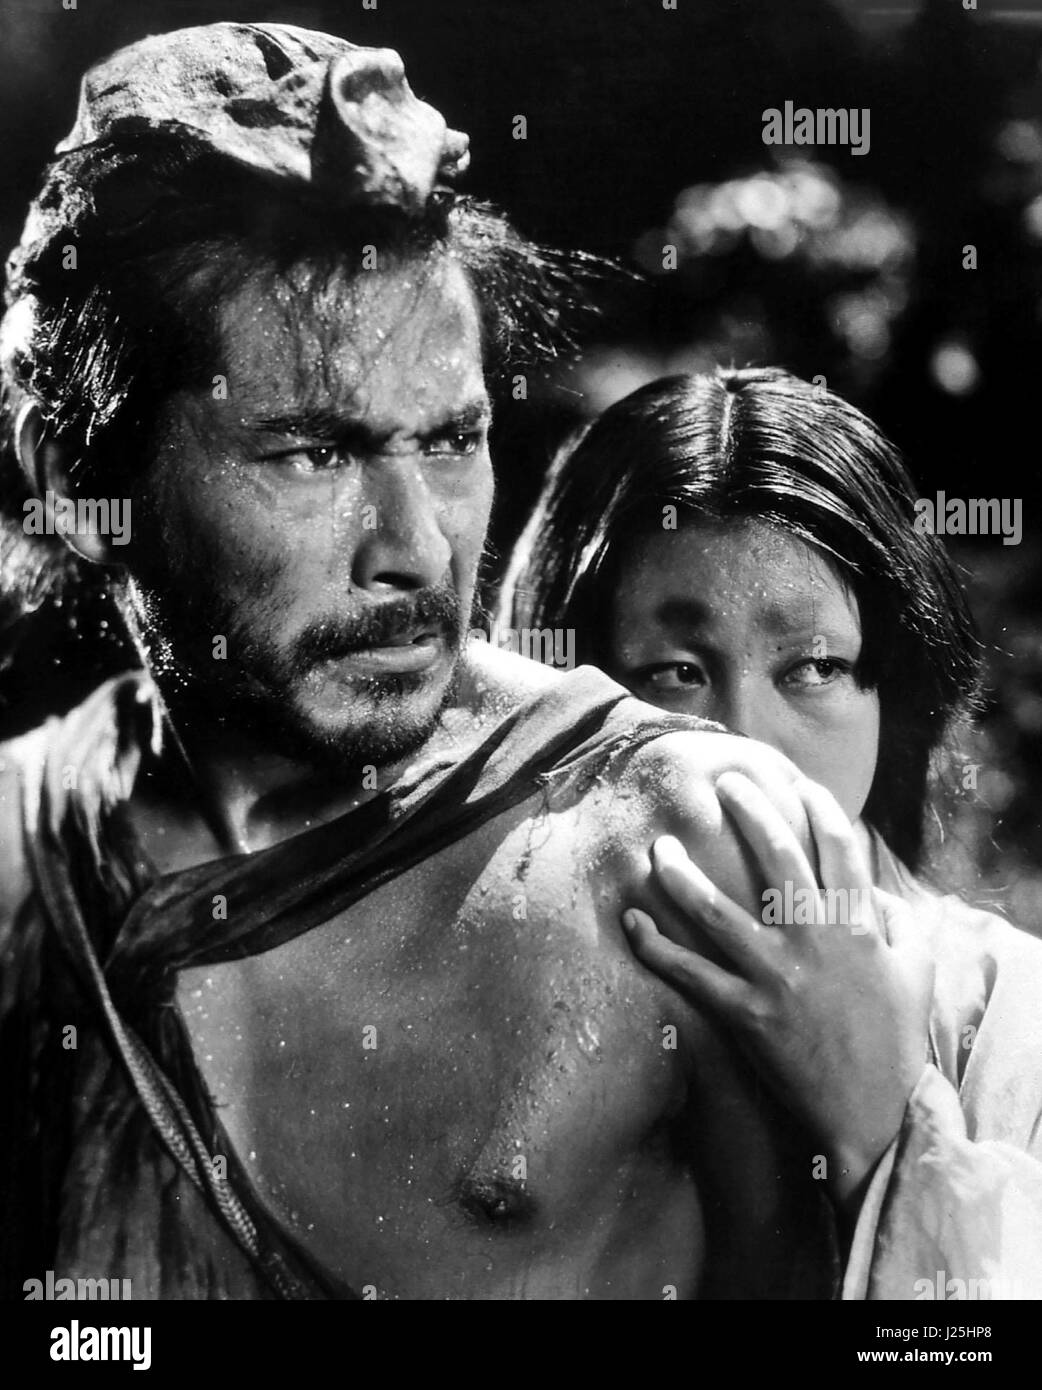 Sterben Sie Sieben Samurai aka. Shichinin keine Samurai, Japan 1954-Regie: Akira Kurosawa Monia: Toshirô Mifune, Takashi Shimura, Keiko Tsushima Stockfoto